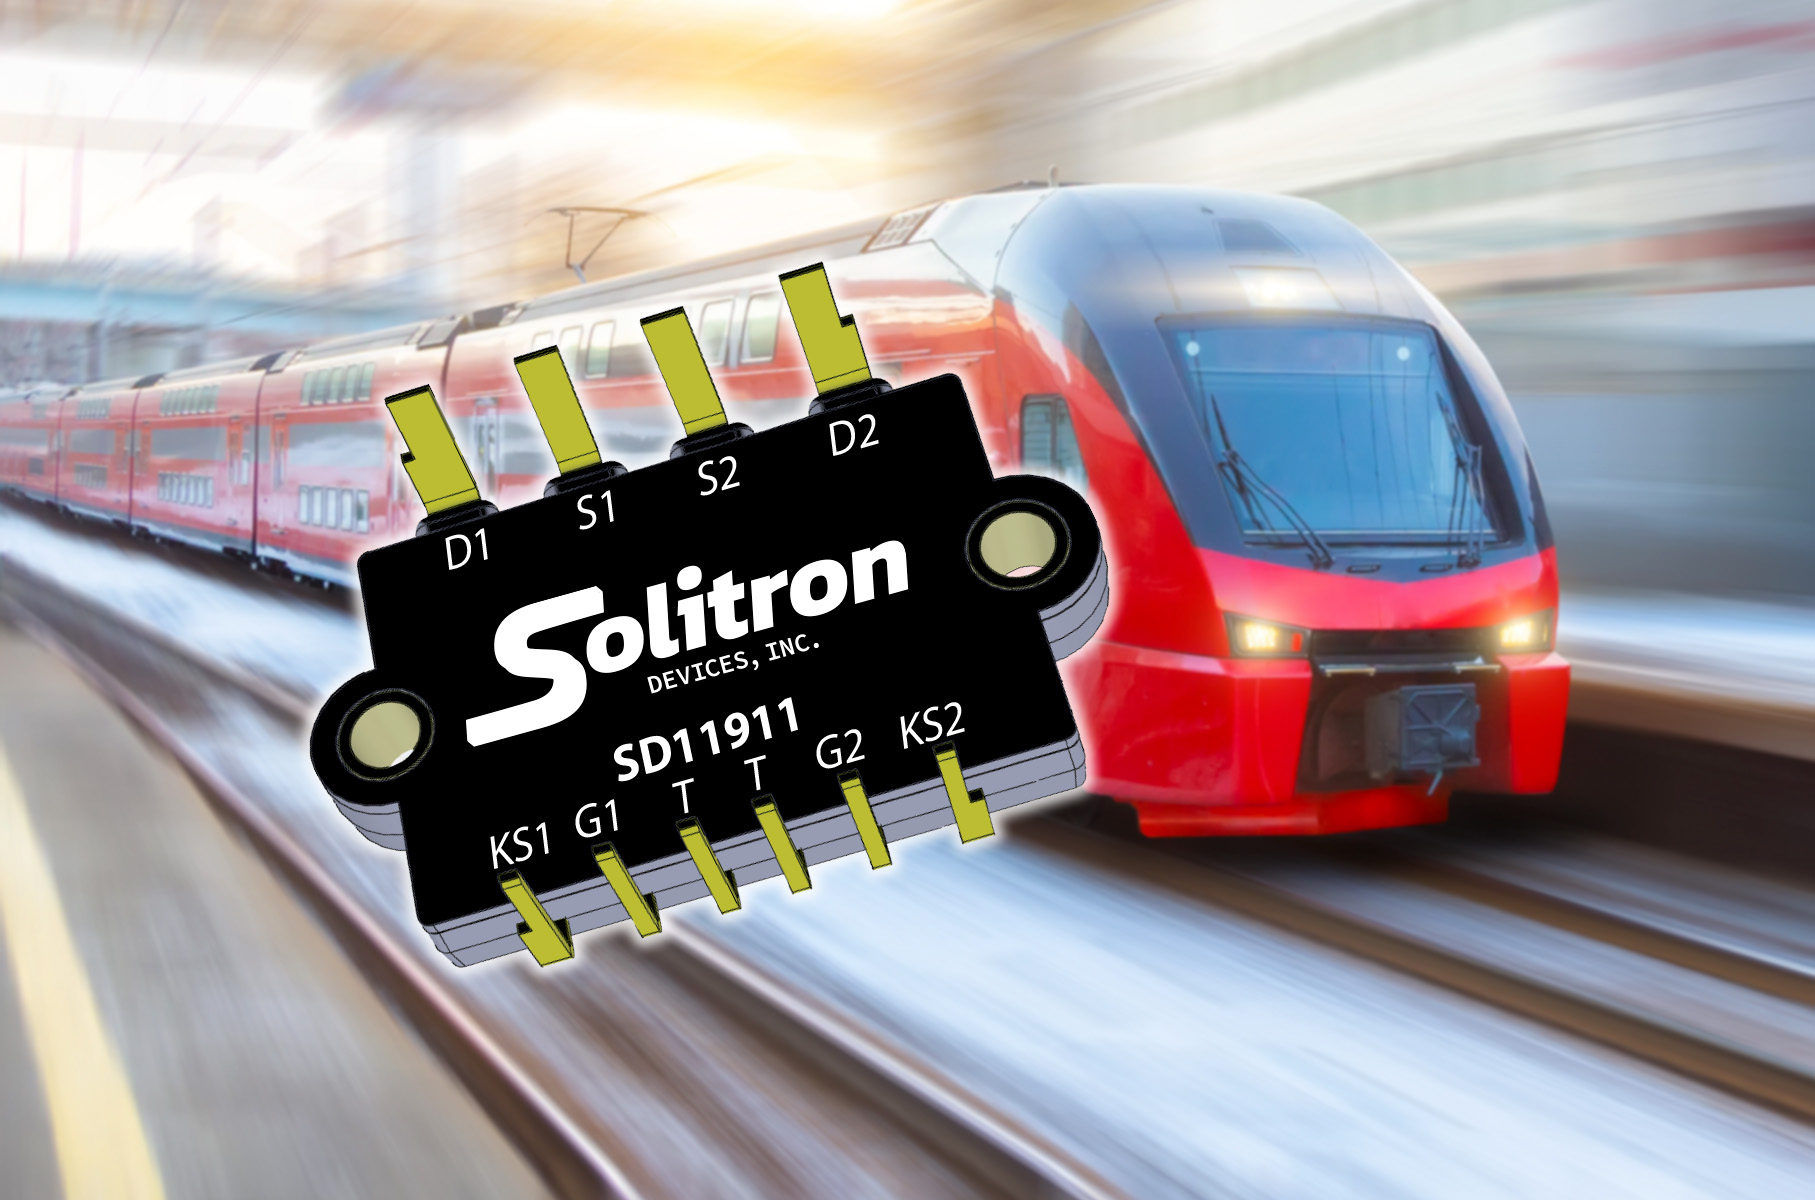 Solitron Devices Announces 1200V, 120A Silicon Carbide Power Modules